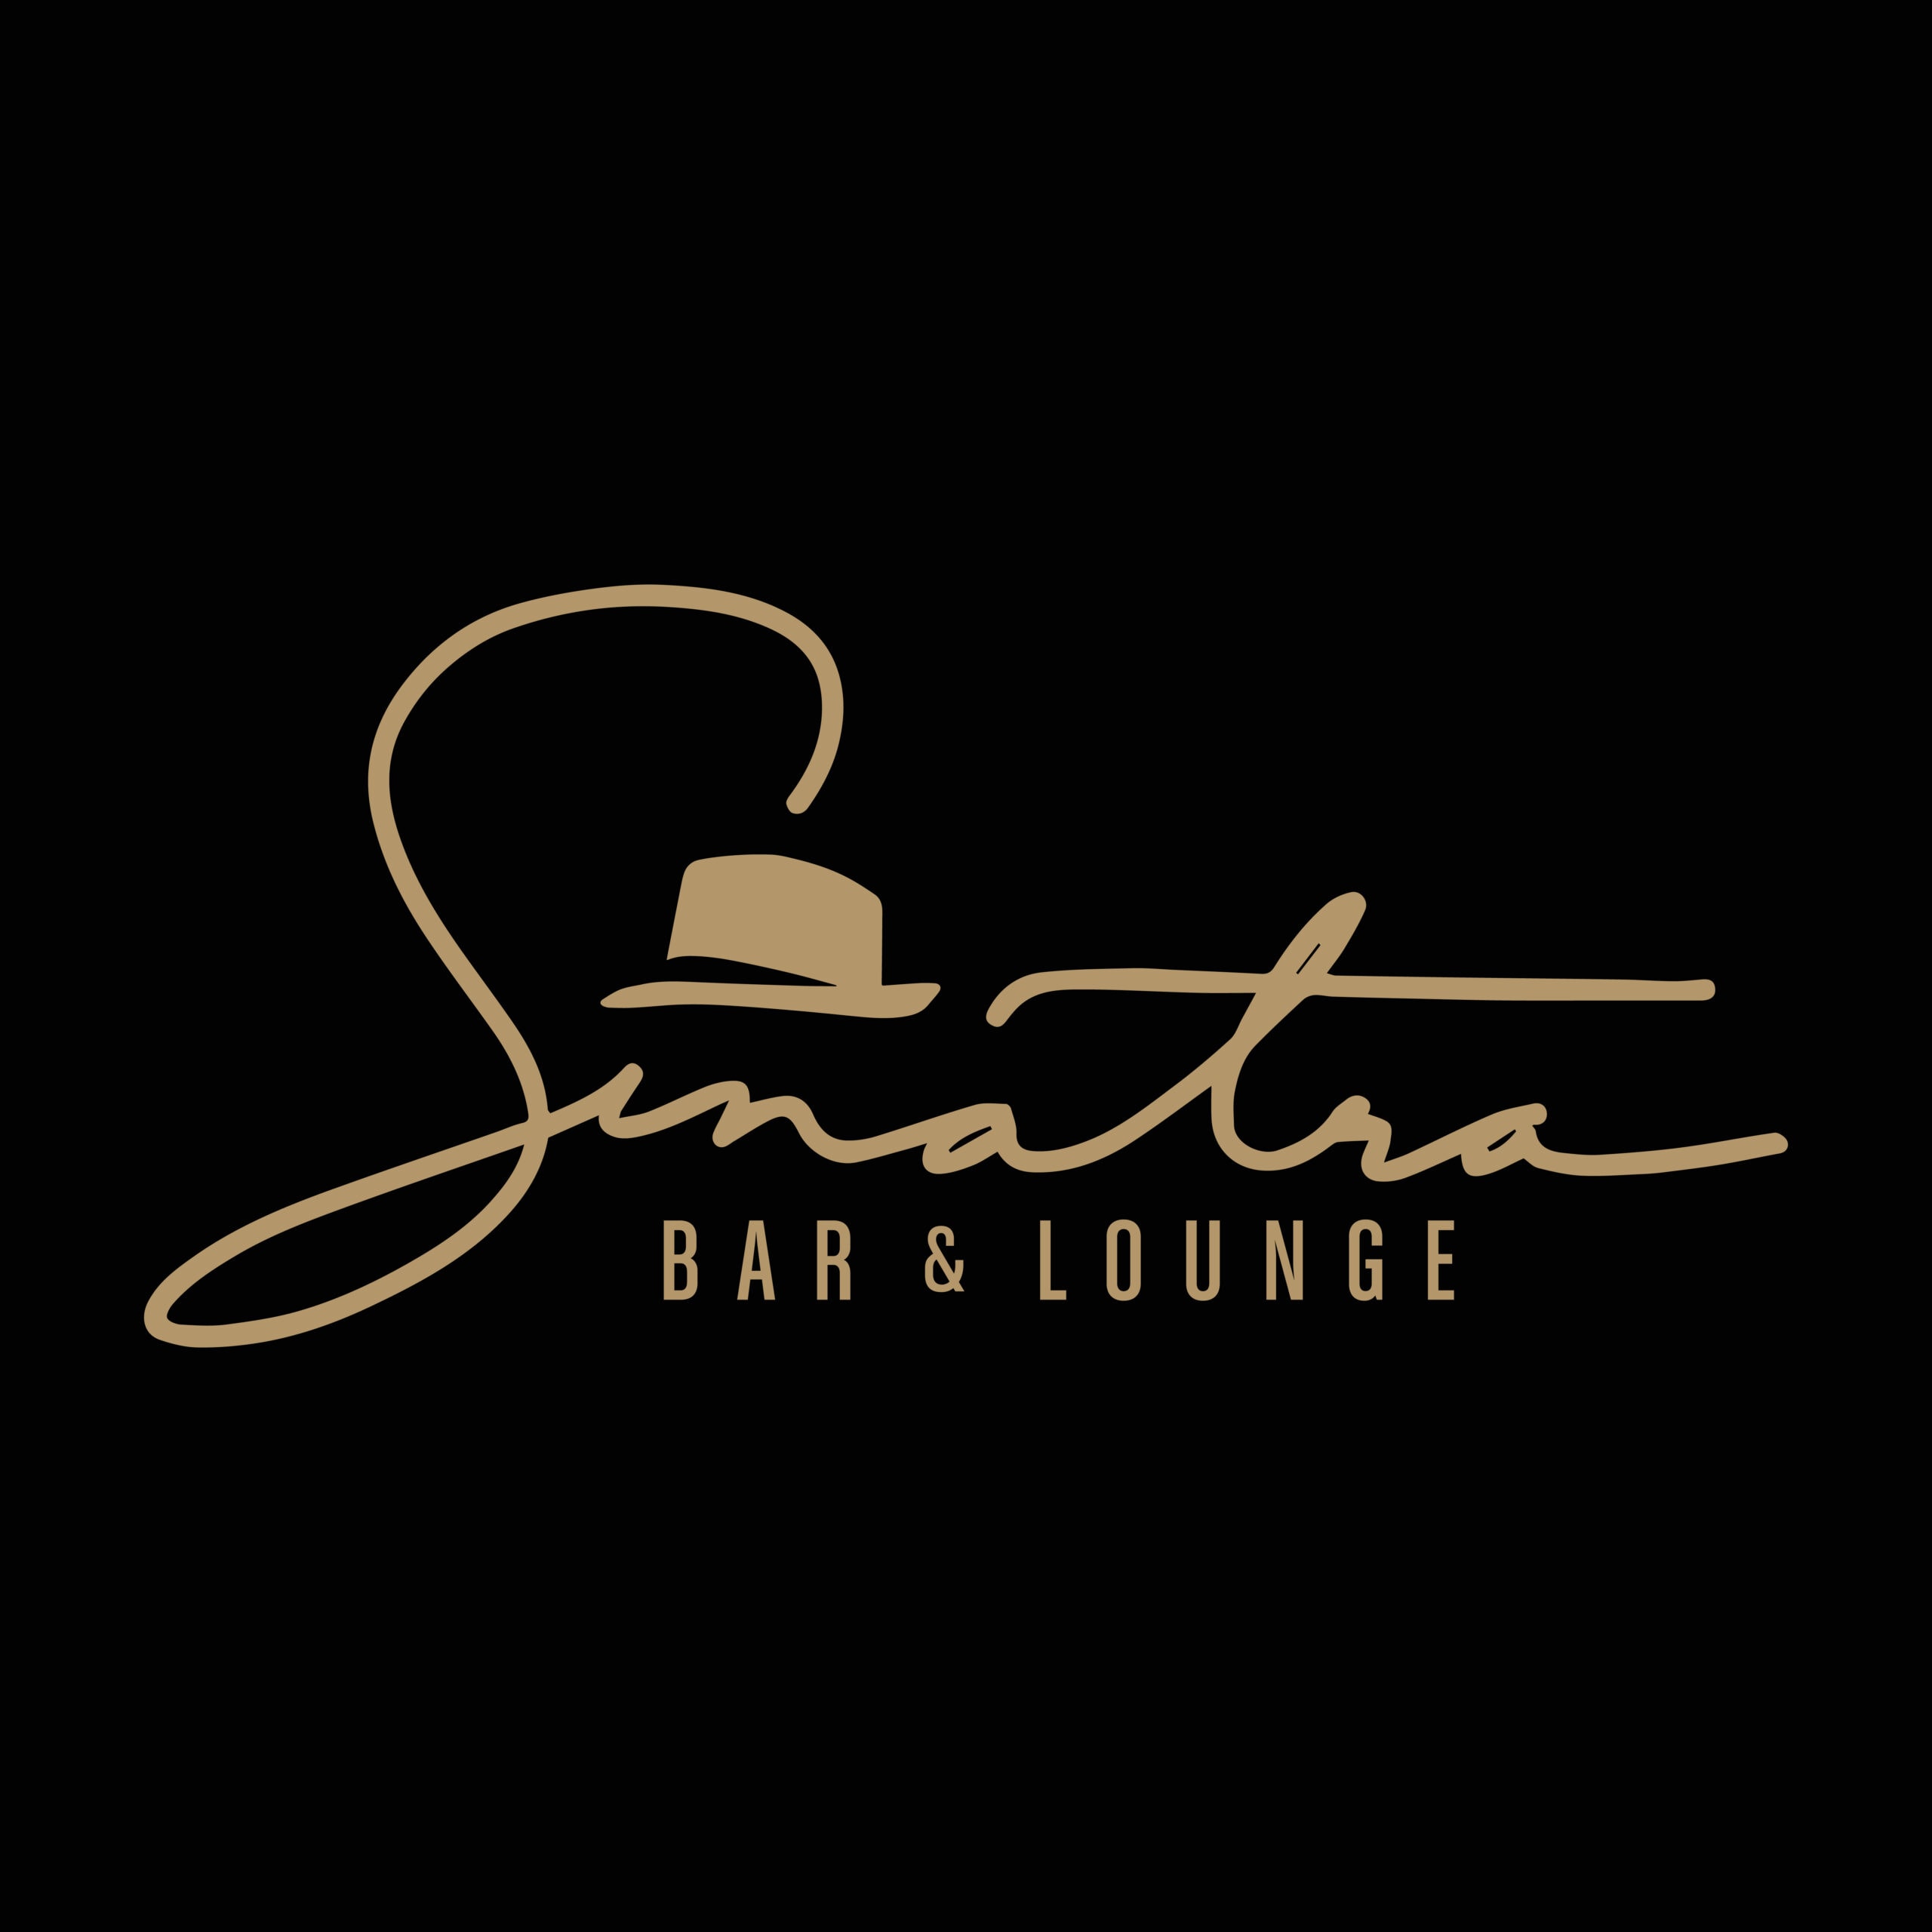 Diamo la notizia: il Sinatra’s Bar & Lounge accetterà prenotazioni questo sabato